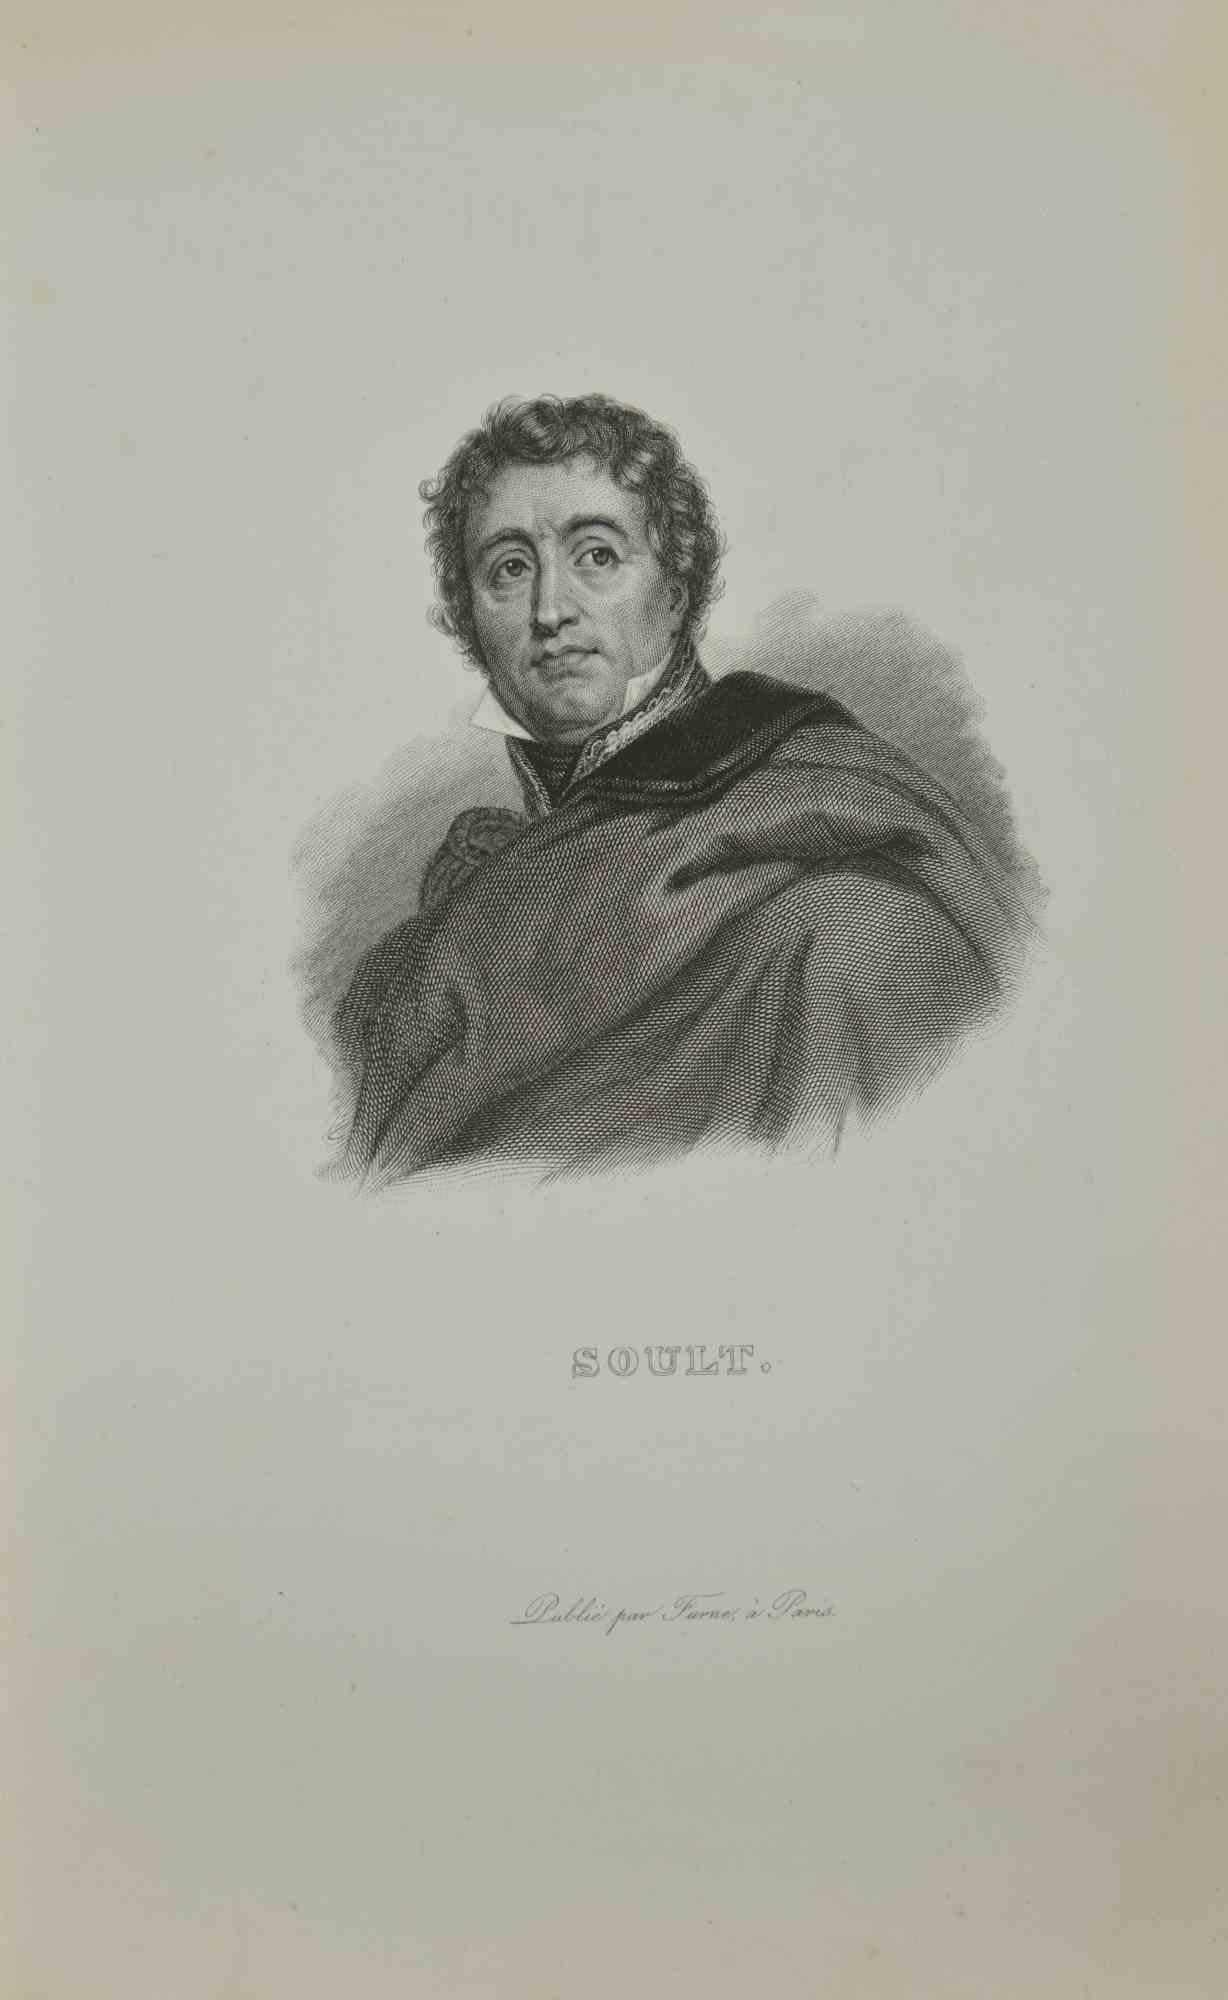 Unknown Portrait Print – Porträt von Soult  - Radierung – 1837